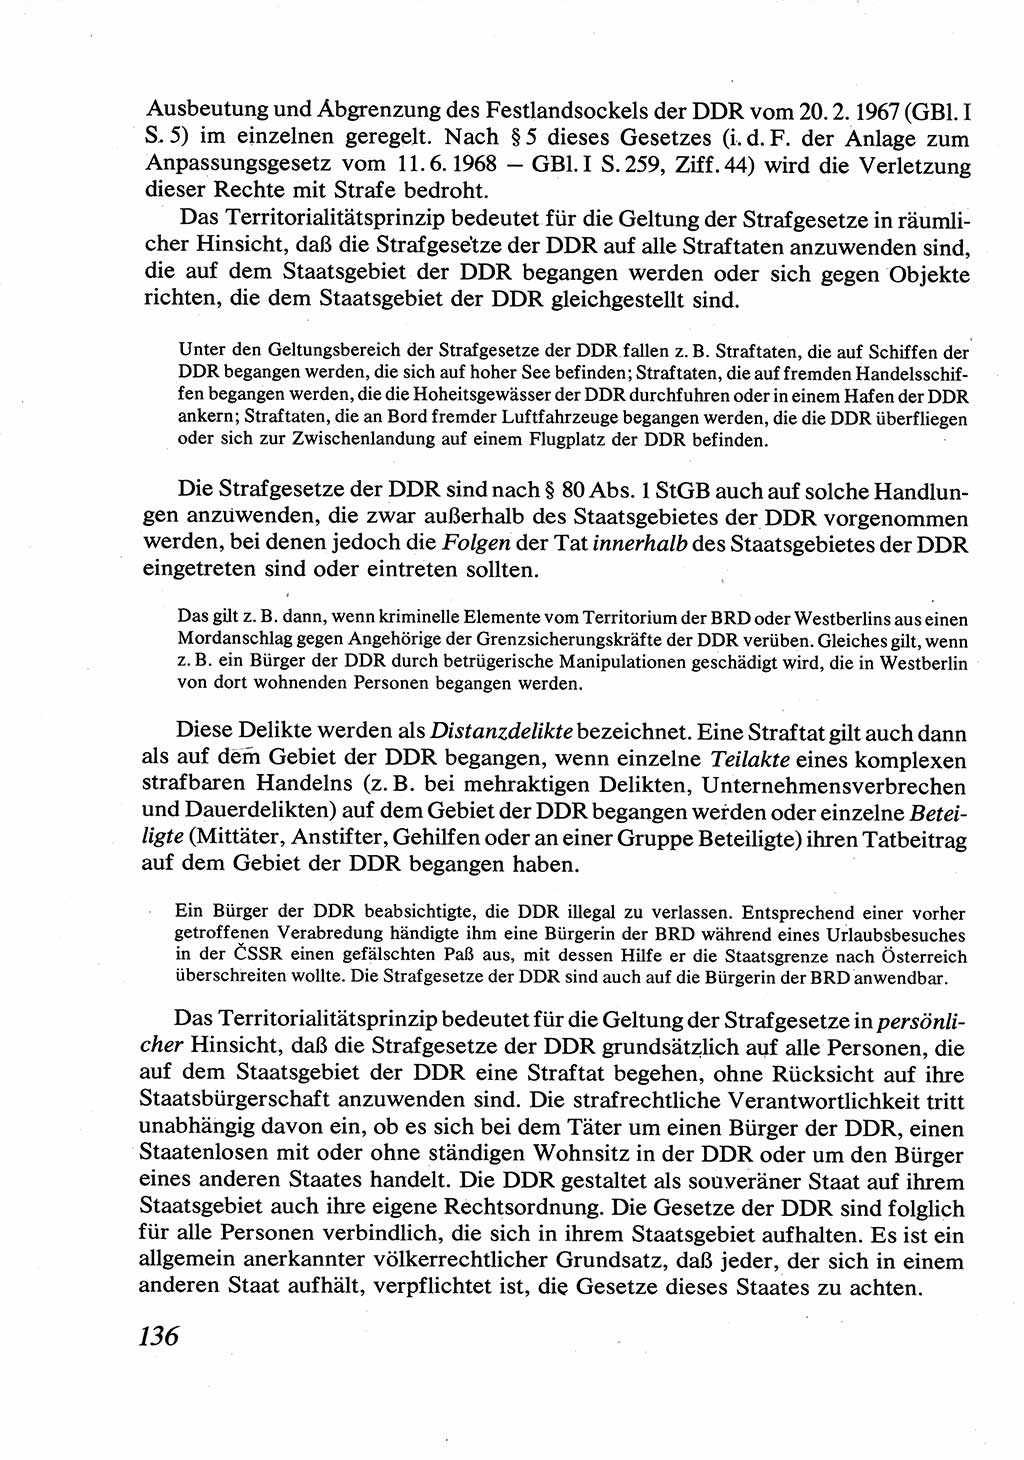 Strafrecht [Deutsche Demokratische Republik (DDR)], Allgemeiner Teil, Lehrbuch 1976, Seite 136 (Strafr. DDR AT Lb. 1976, S. 136)